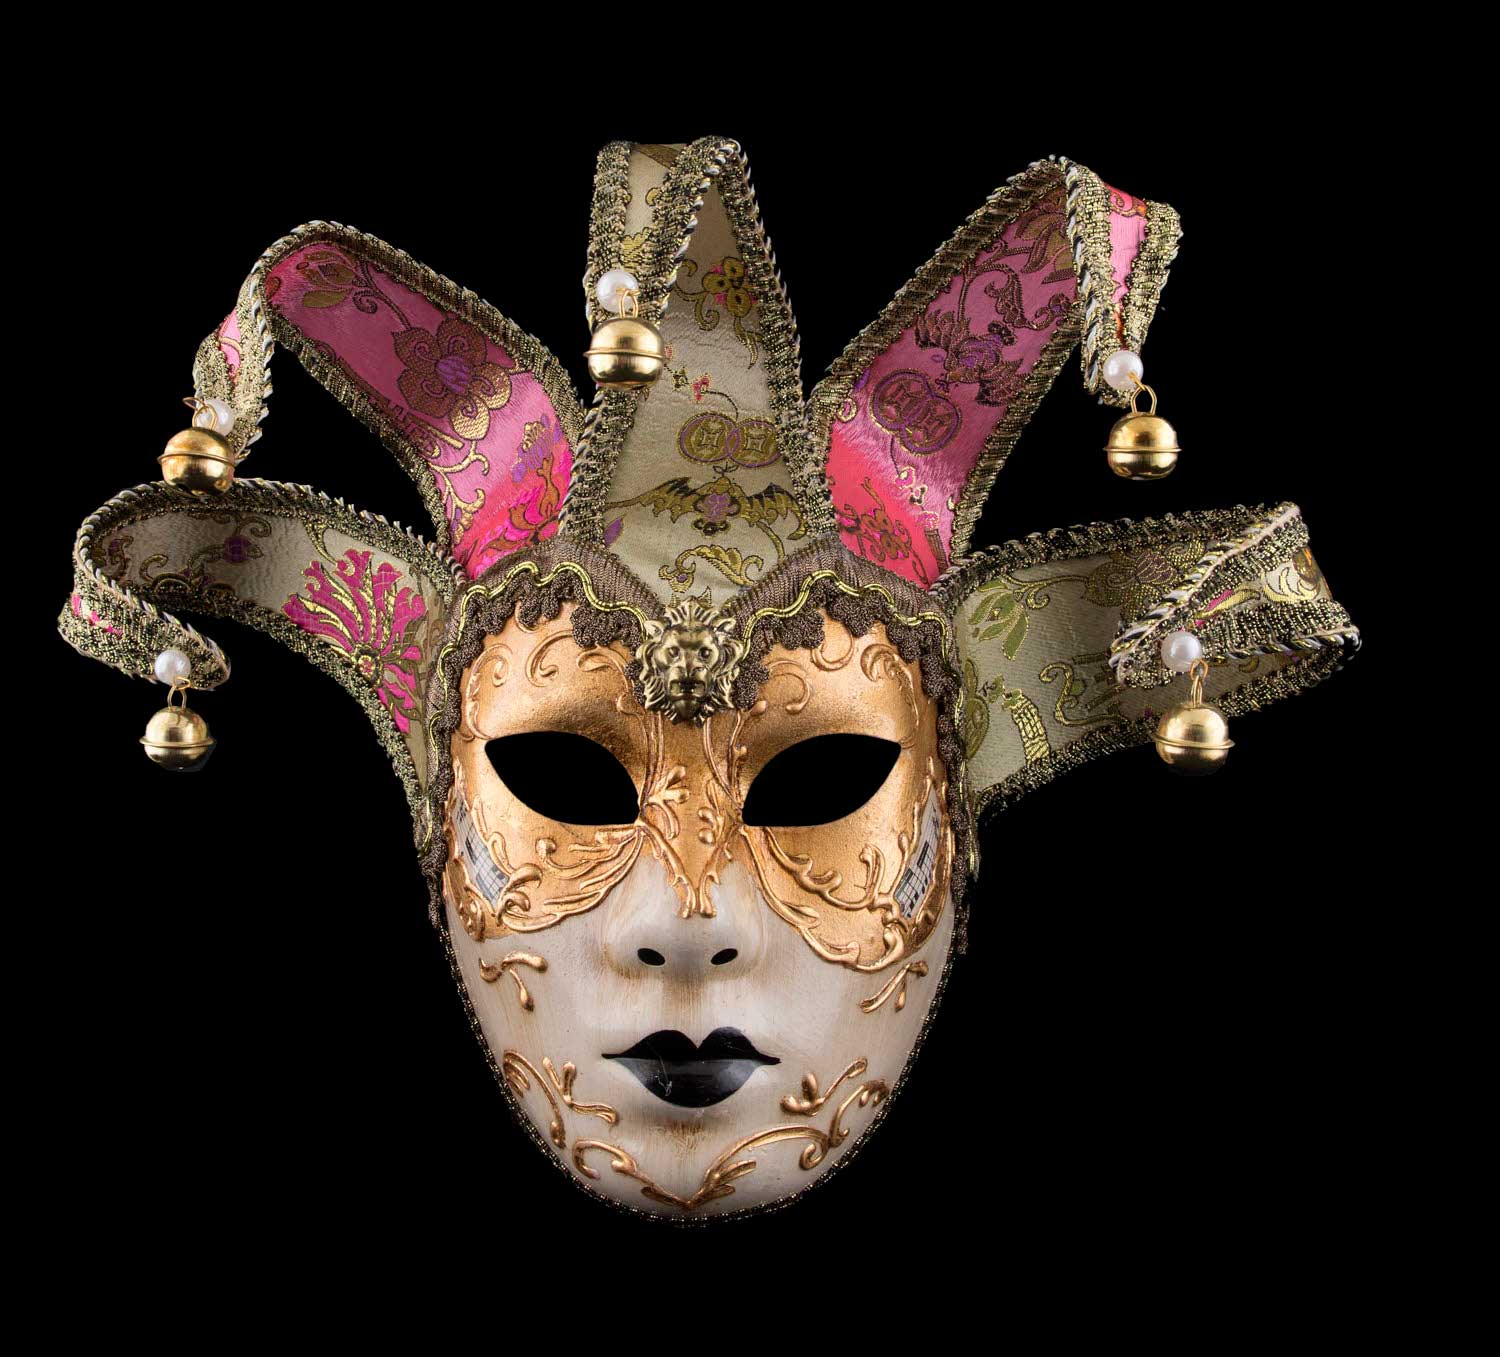 Masque deguisement-masque de Venise pour le carnaval-masque pas